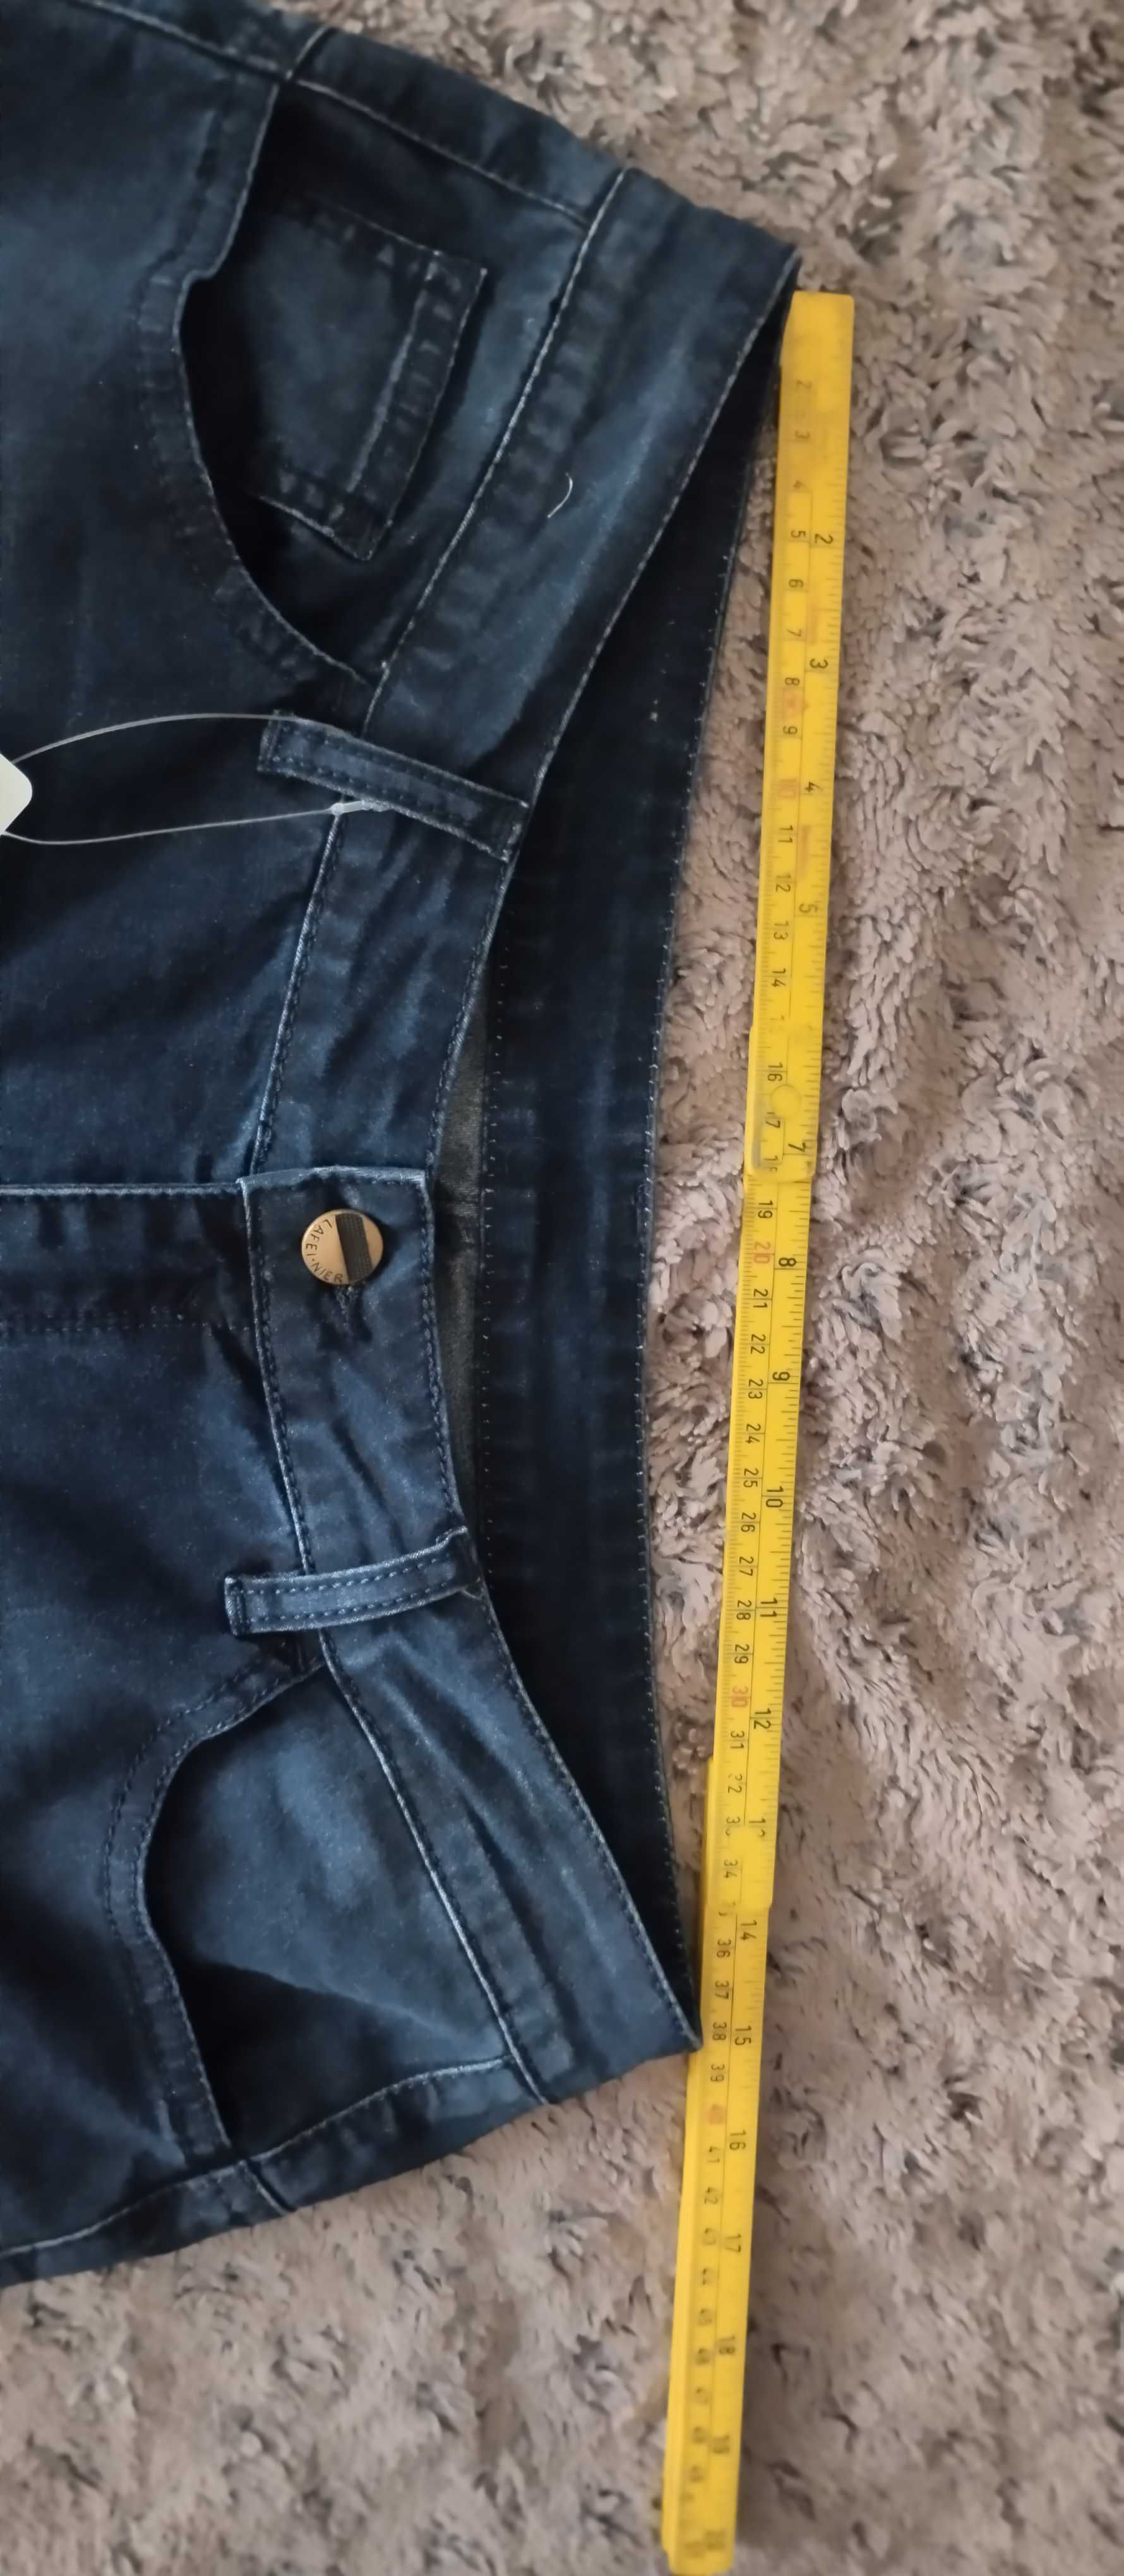 Spodnie jeansowe XL